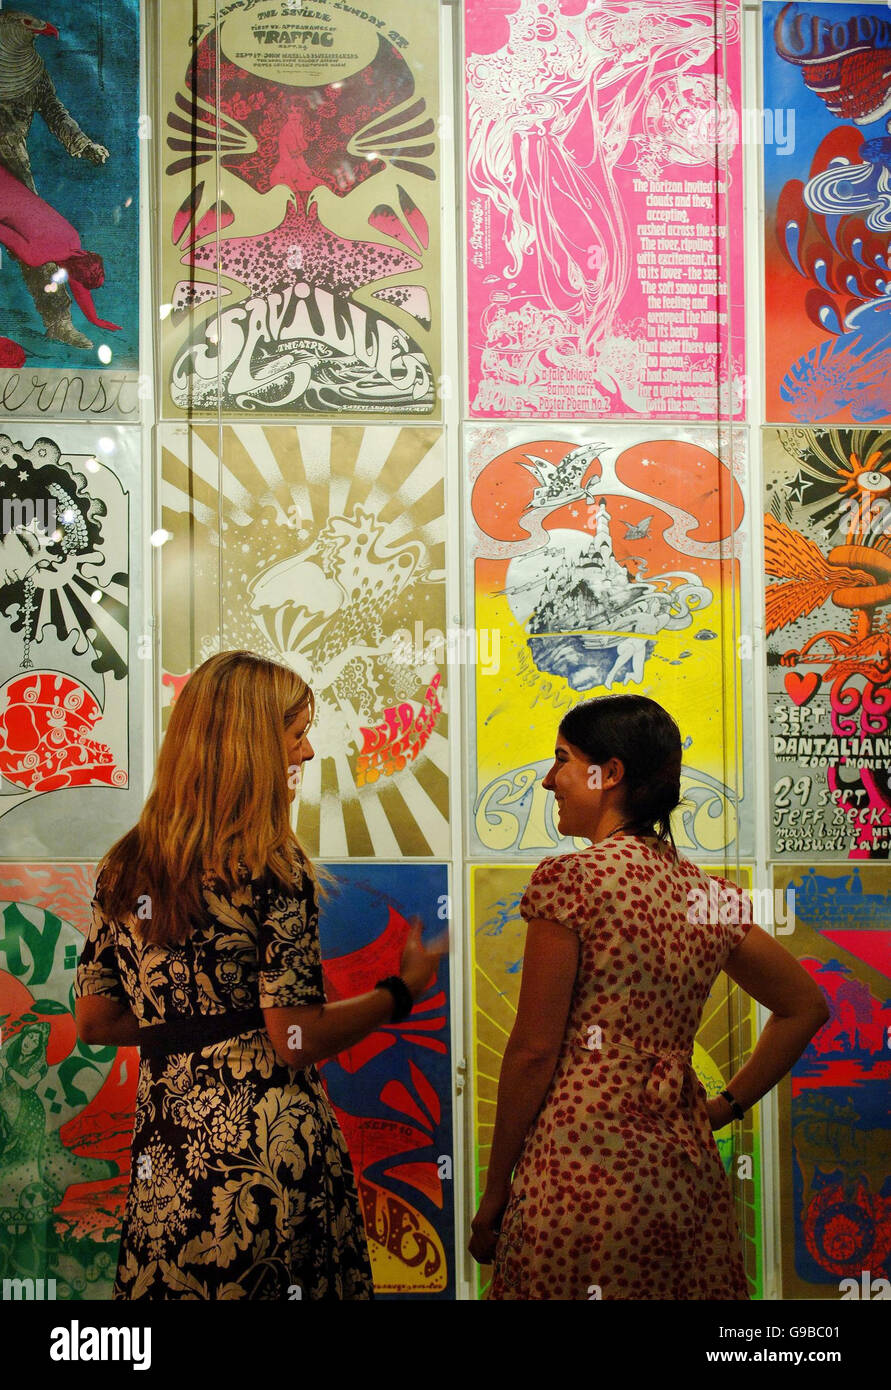 Les visiteurs discutent des affiches graphiques de la fin des années 60 de divers artistes, dans le cadre d'une exposition Sixties Graphics qui ouvrira le 7 juin au Victoria & Albert Museum à Londres. Banque D'Images